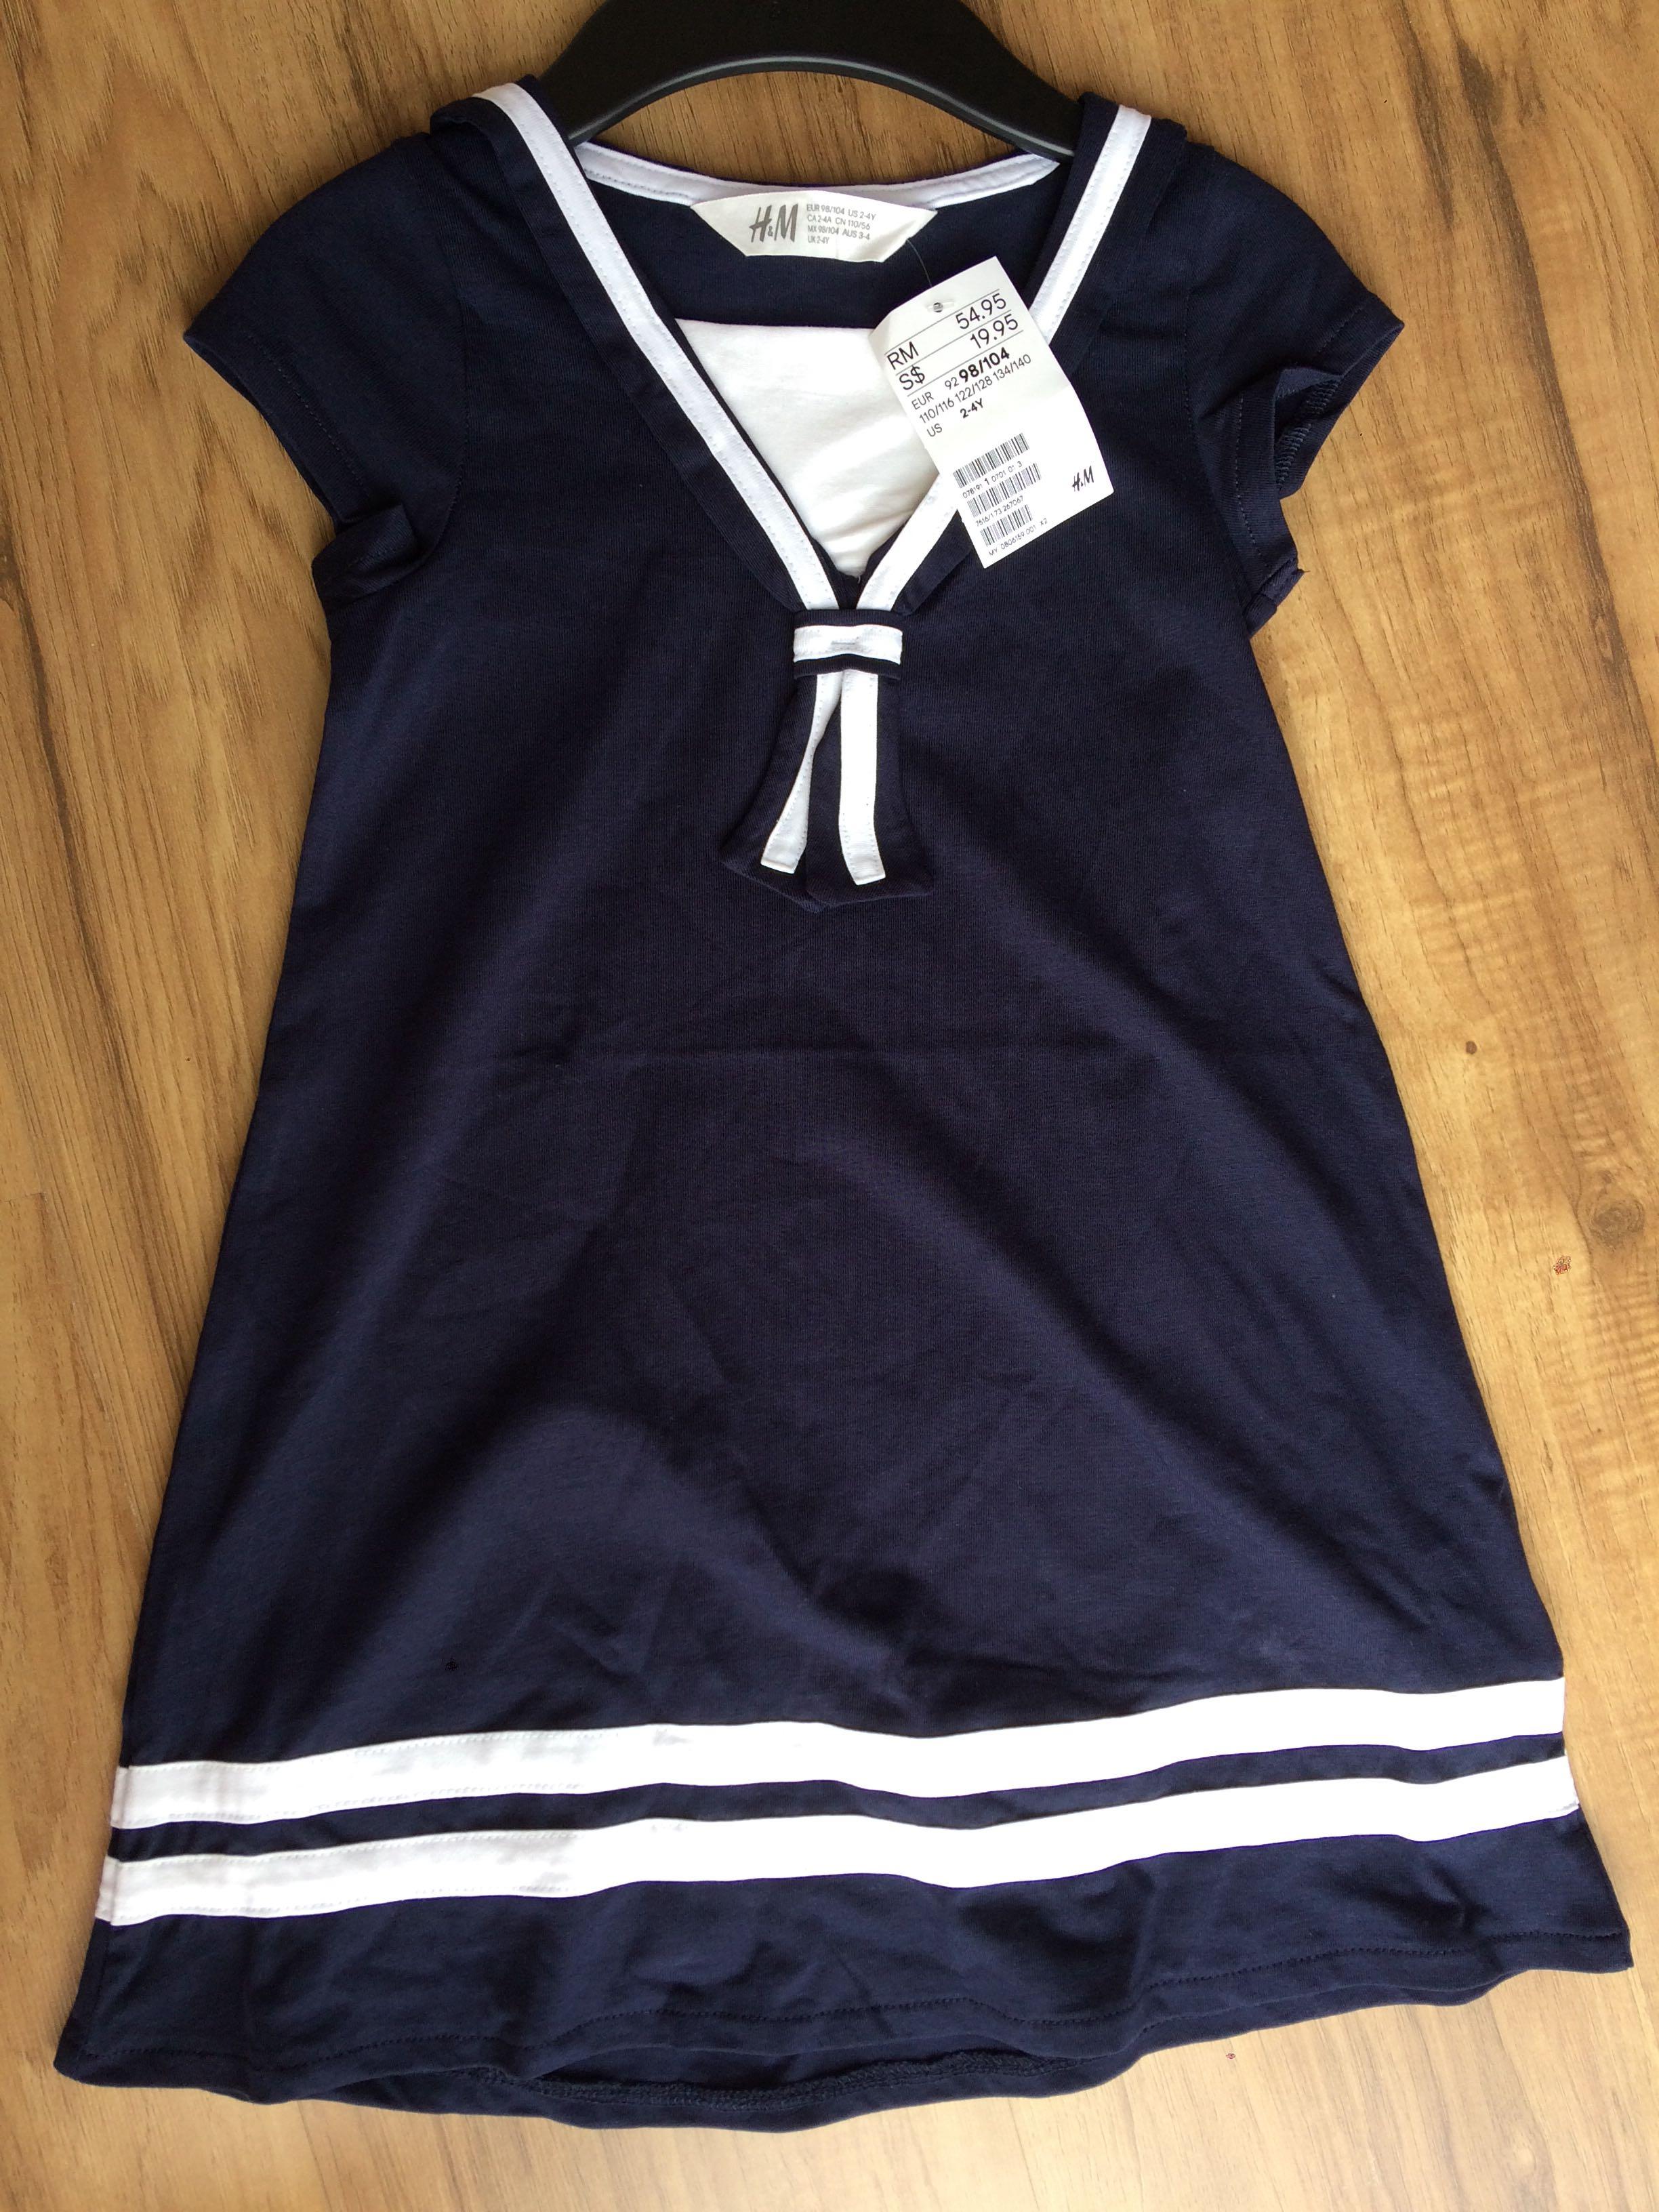 h&m sailor dress